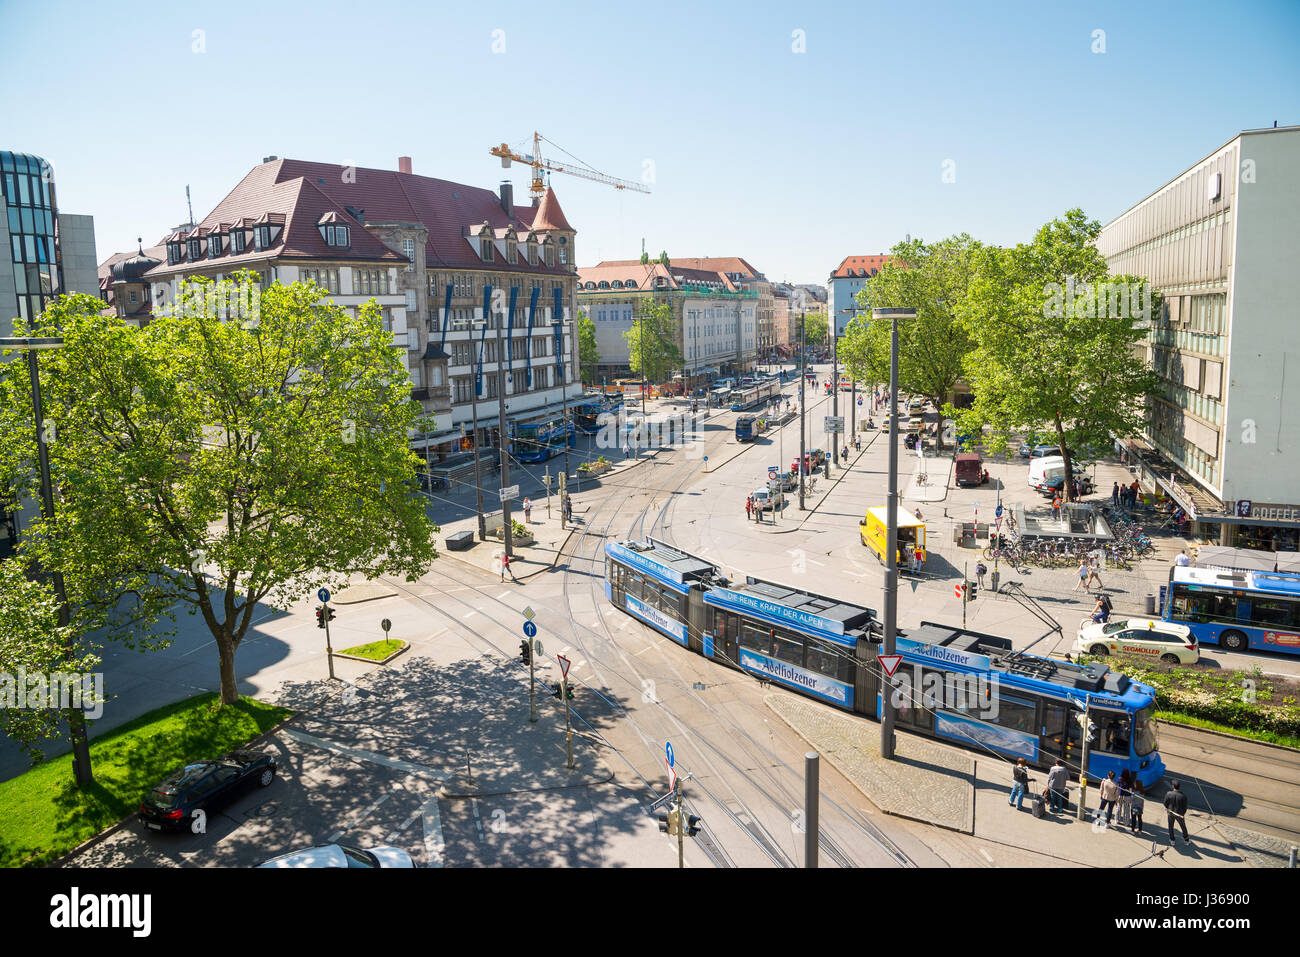 München, Deutschland - 7. Juni 2016: Städtisches Motiv mit Straßenbahn auf der Straße in München, Deutschland Stockfoto